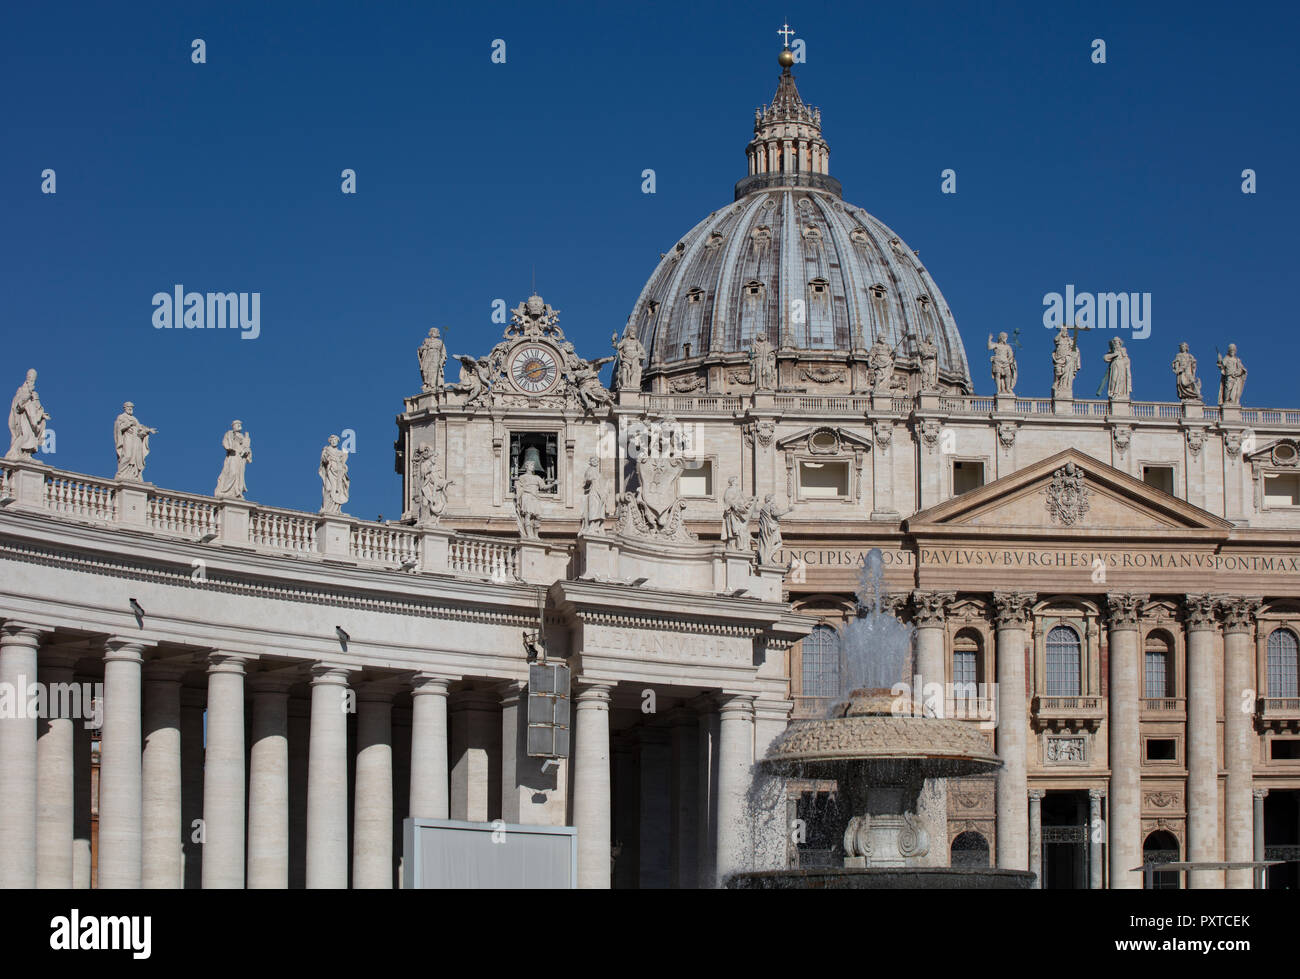 La basilique Saint Pierre au Vatican, montrant une partie de la colonnade conçue par Bernini et la façade et le dôme de la basilique contre un ciel d'été bleu Banque D'Images